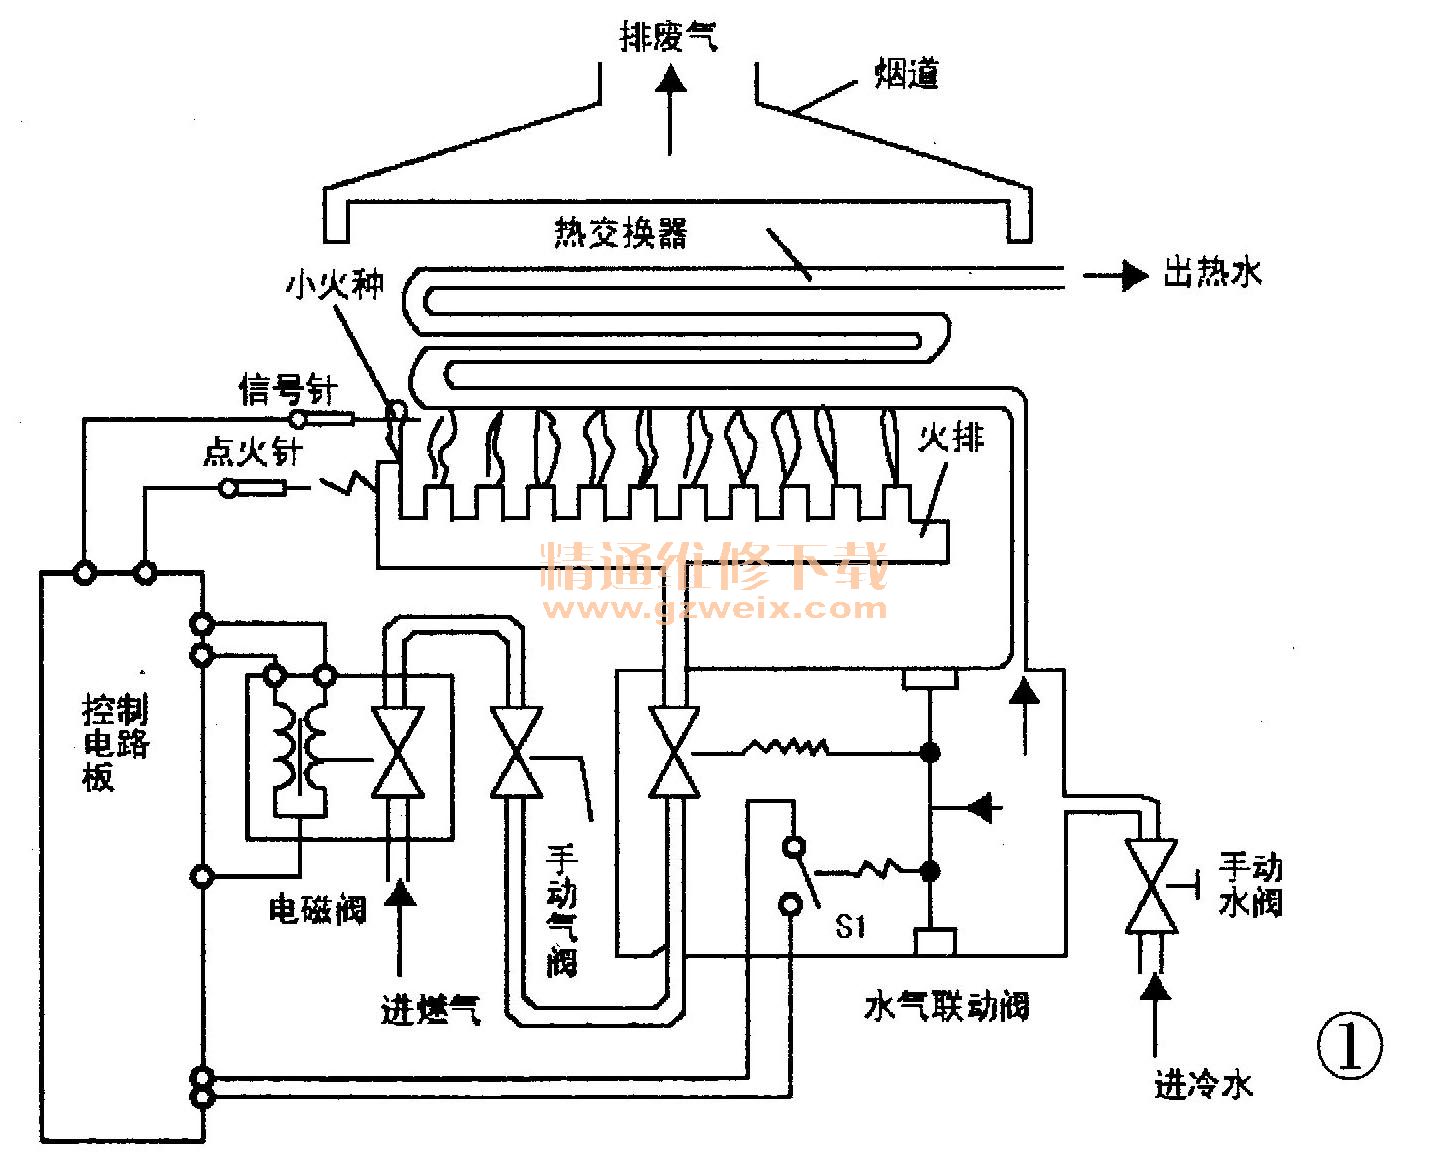 公爵GW-988B型燃气热水器原理与检修(上)